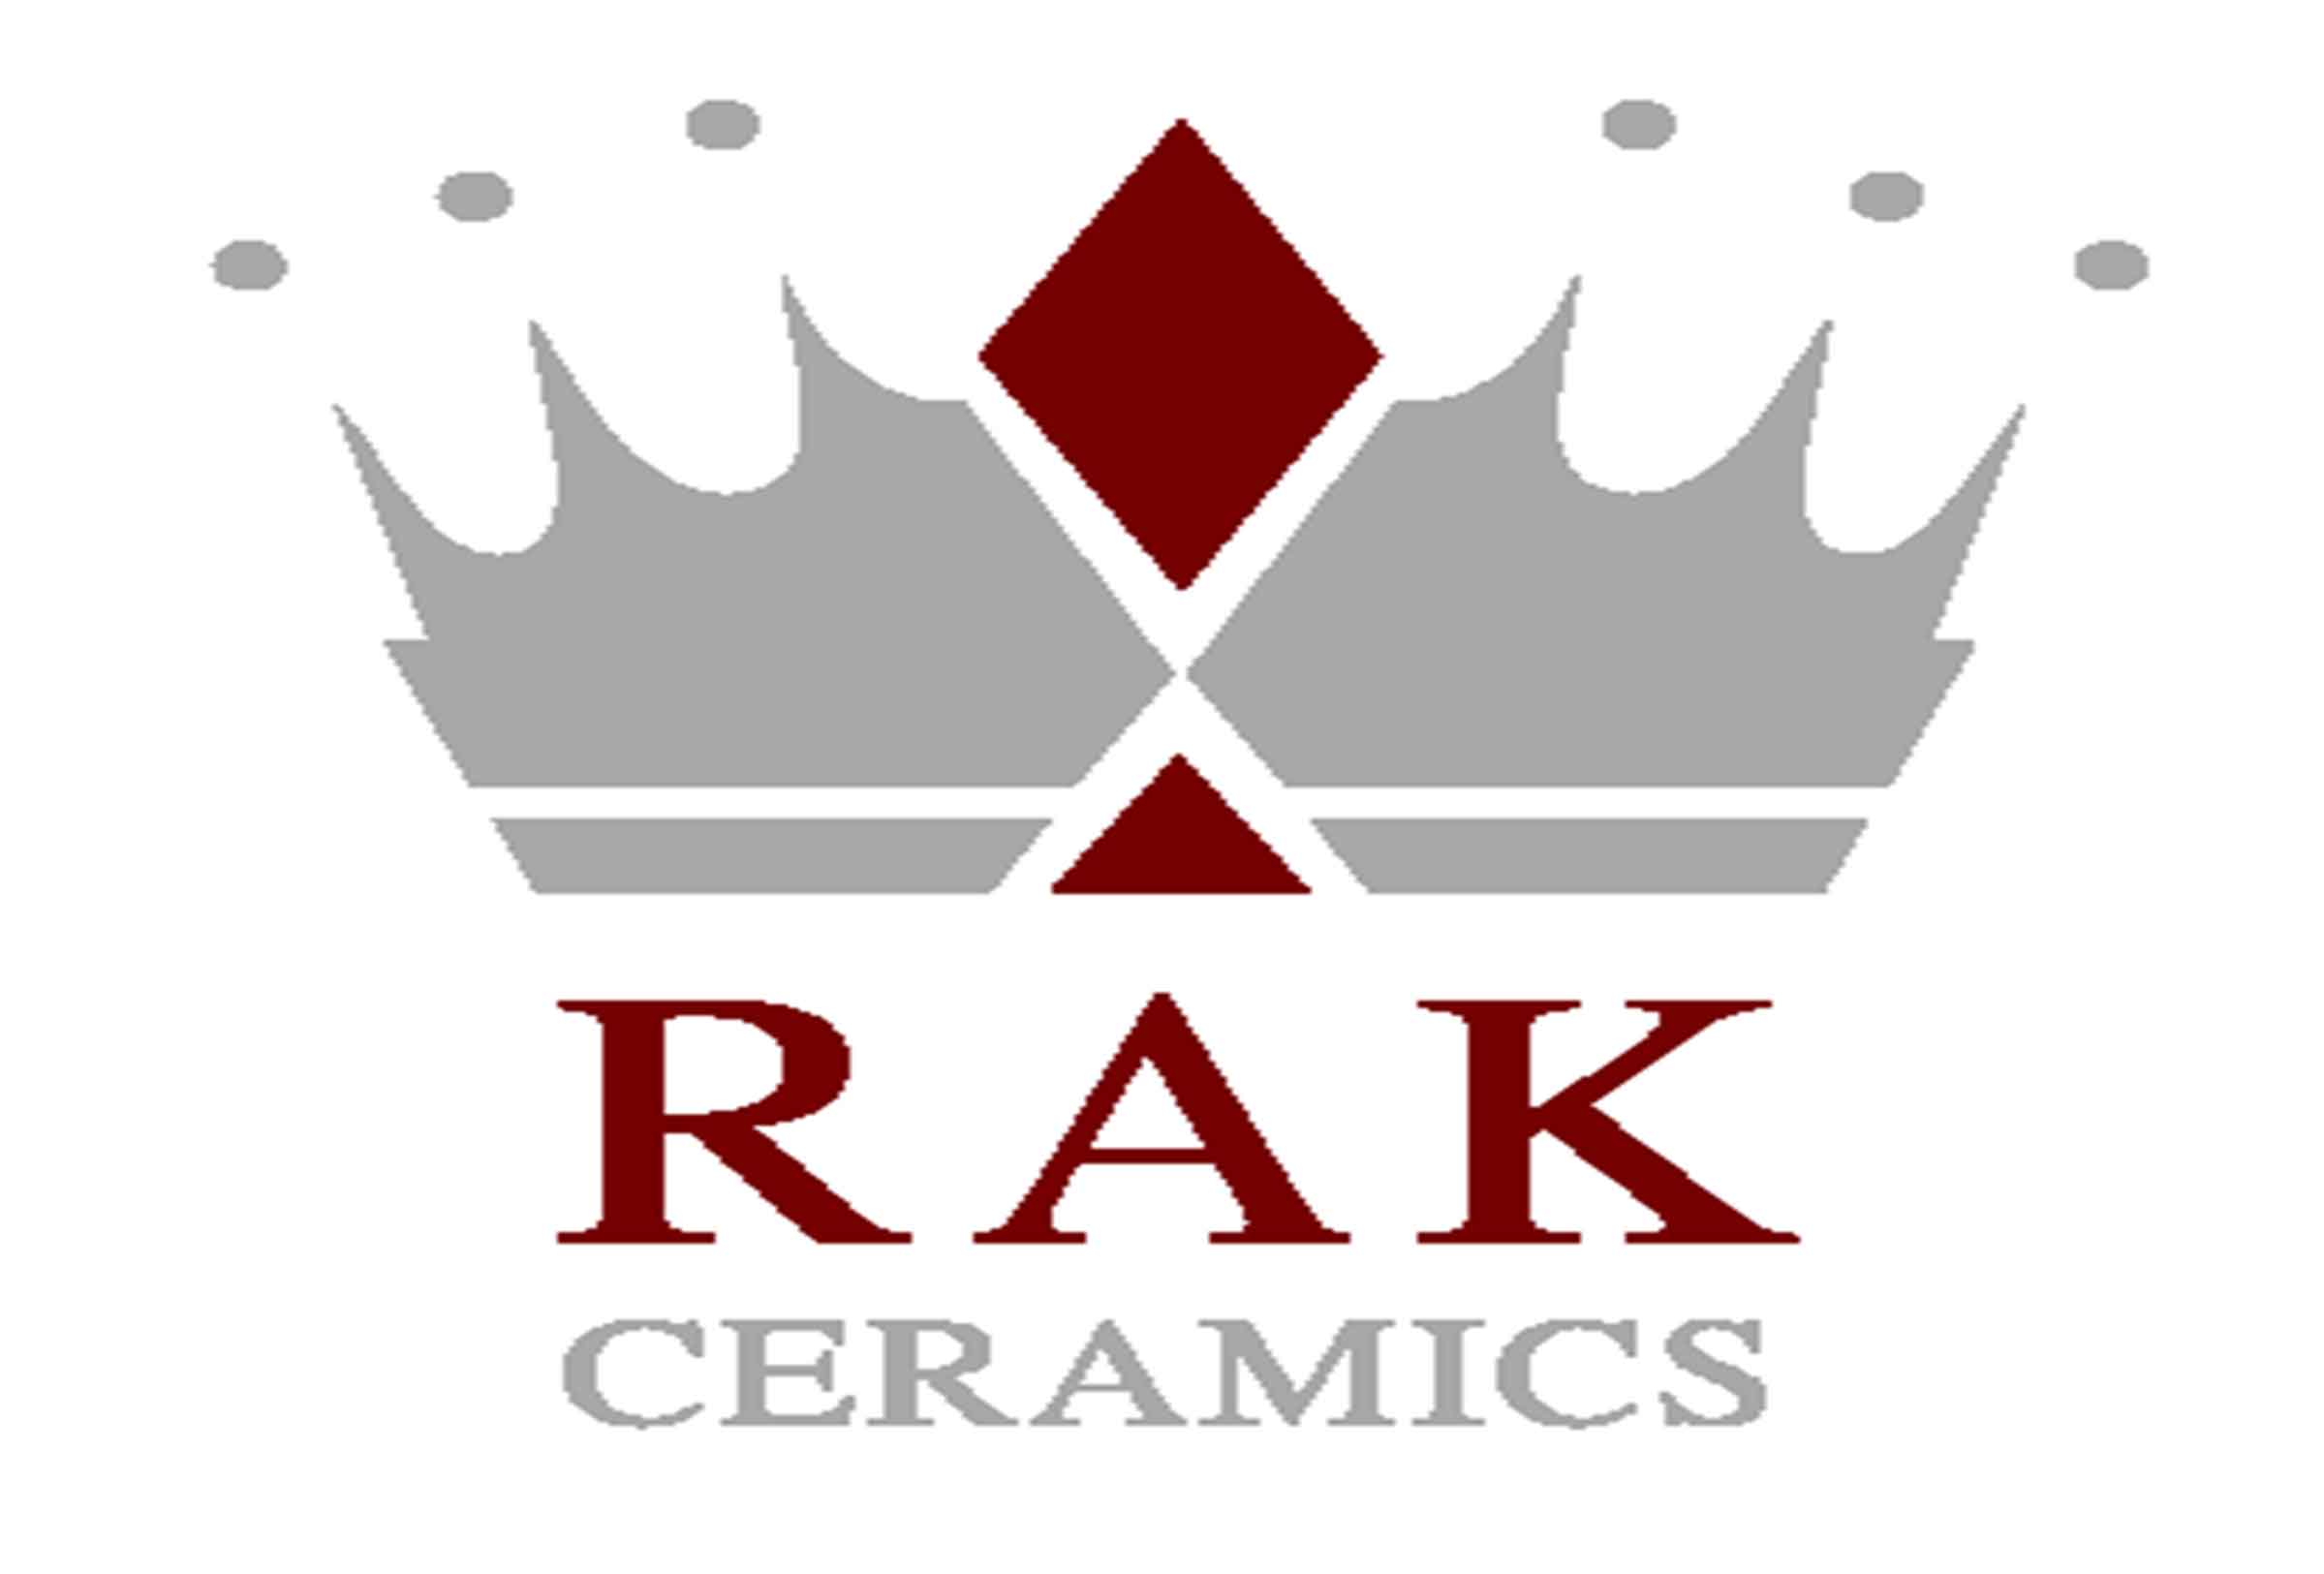  Rak  ceramics Logos 